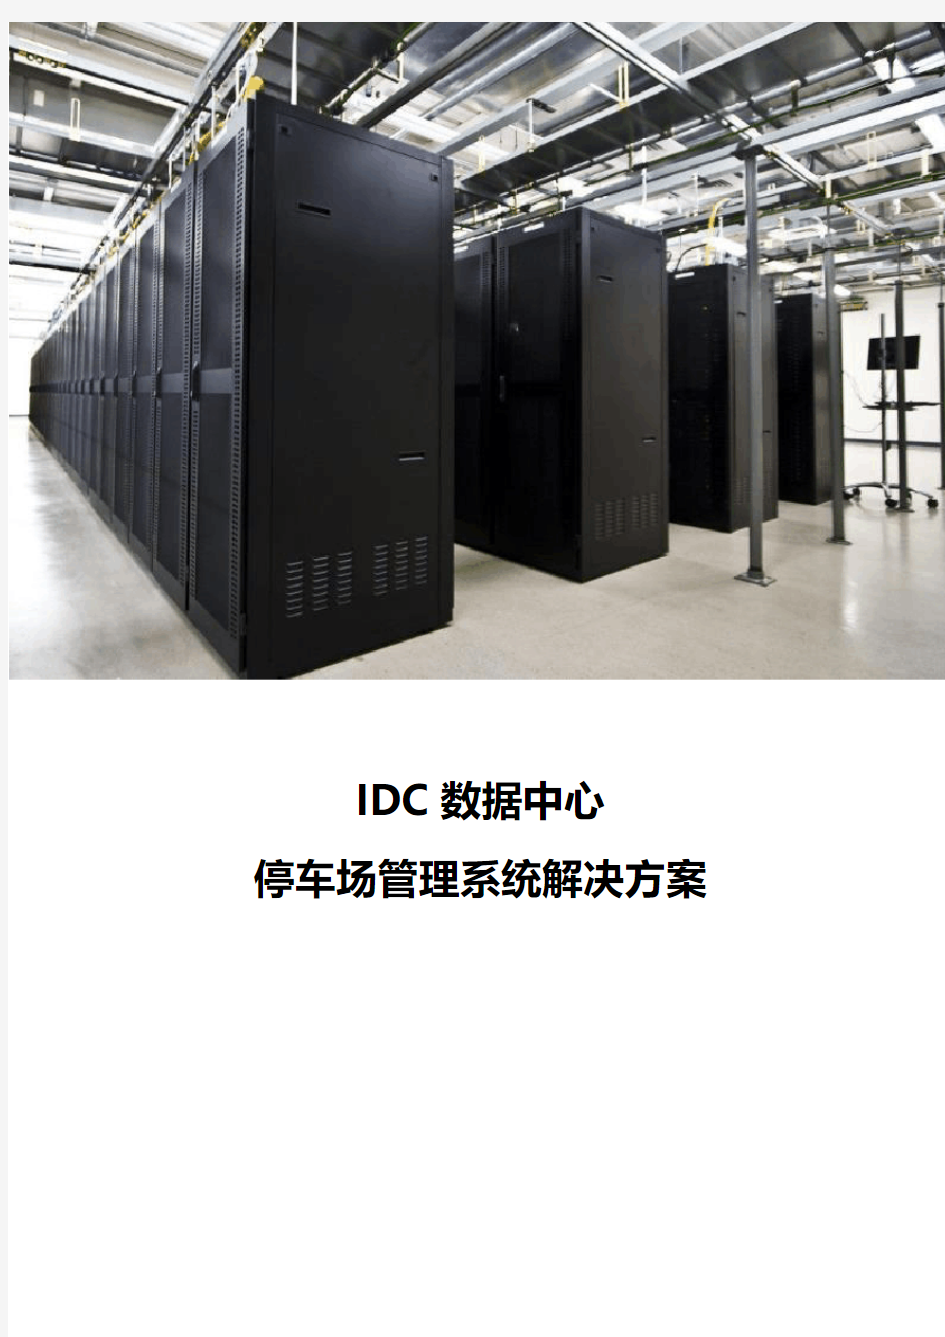 IDC数据中心停车场管理系统解决方案